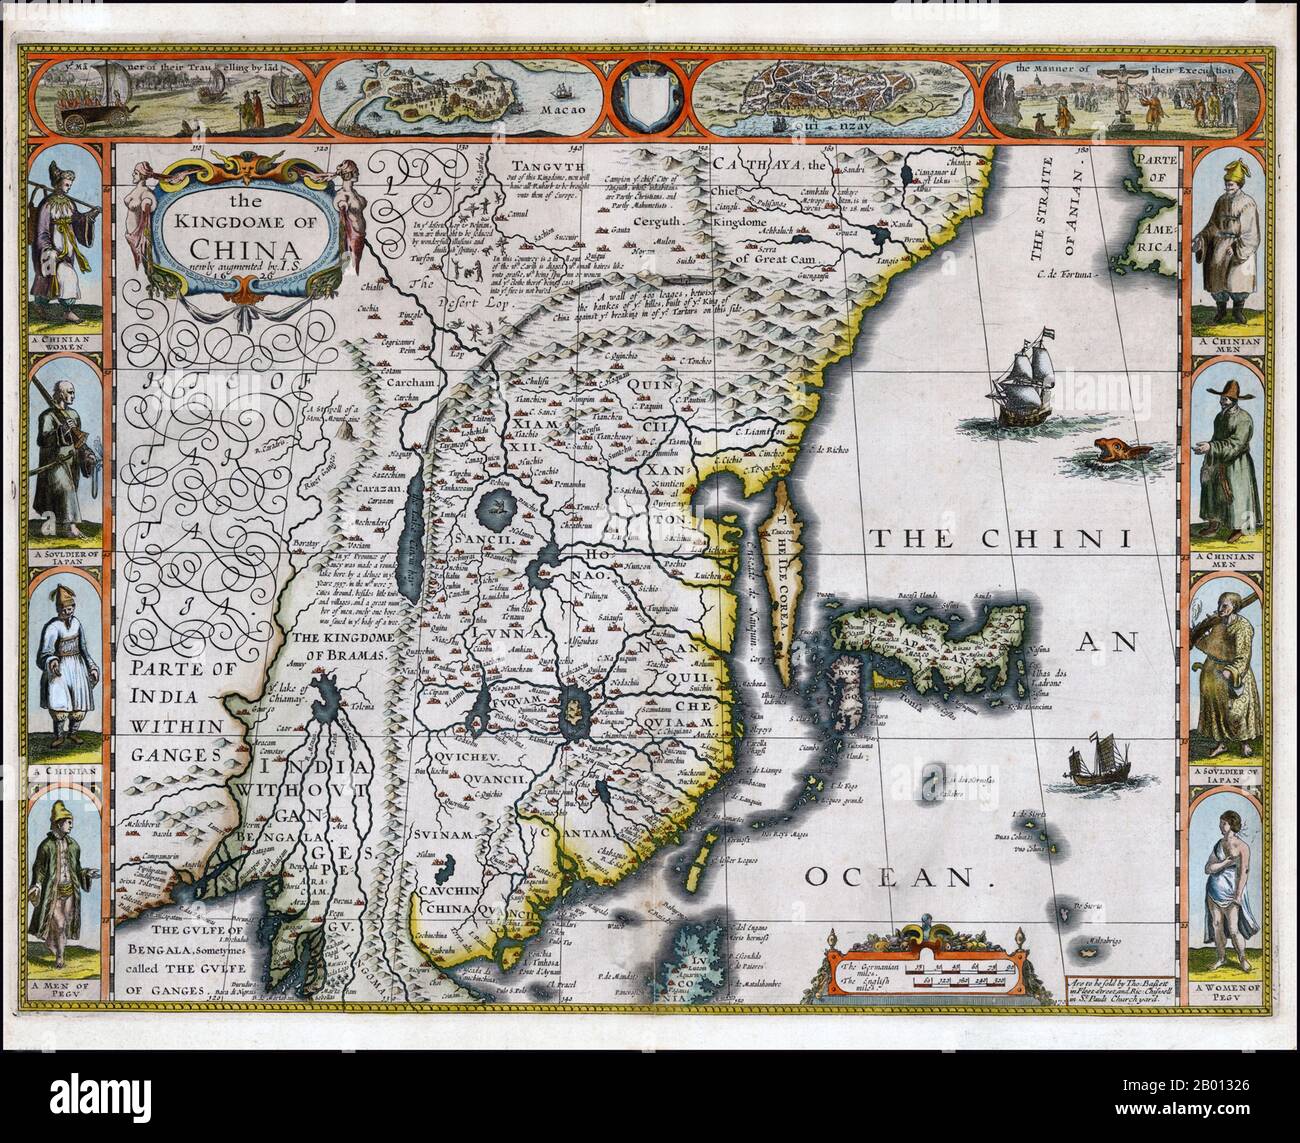 China: Eine englische Karte des Ming-Reiches von John Speed (1552. - 28. Juli 1629), 1626. John Speed (1552-1629) war ein berühmter elisabethischer Kartograph und Historiker. Er galt als einer der bekanntesten englischen Kartenmacher der frühen Neuzeit. Diese Karte entstand gegen Ende der Ming-Dynastie (1368-1644). Stockfoto